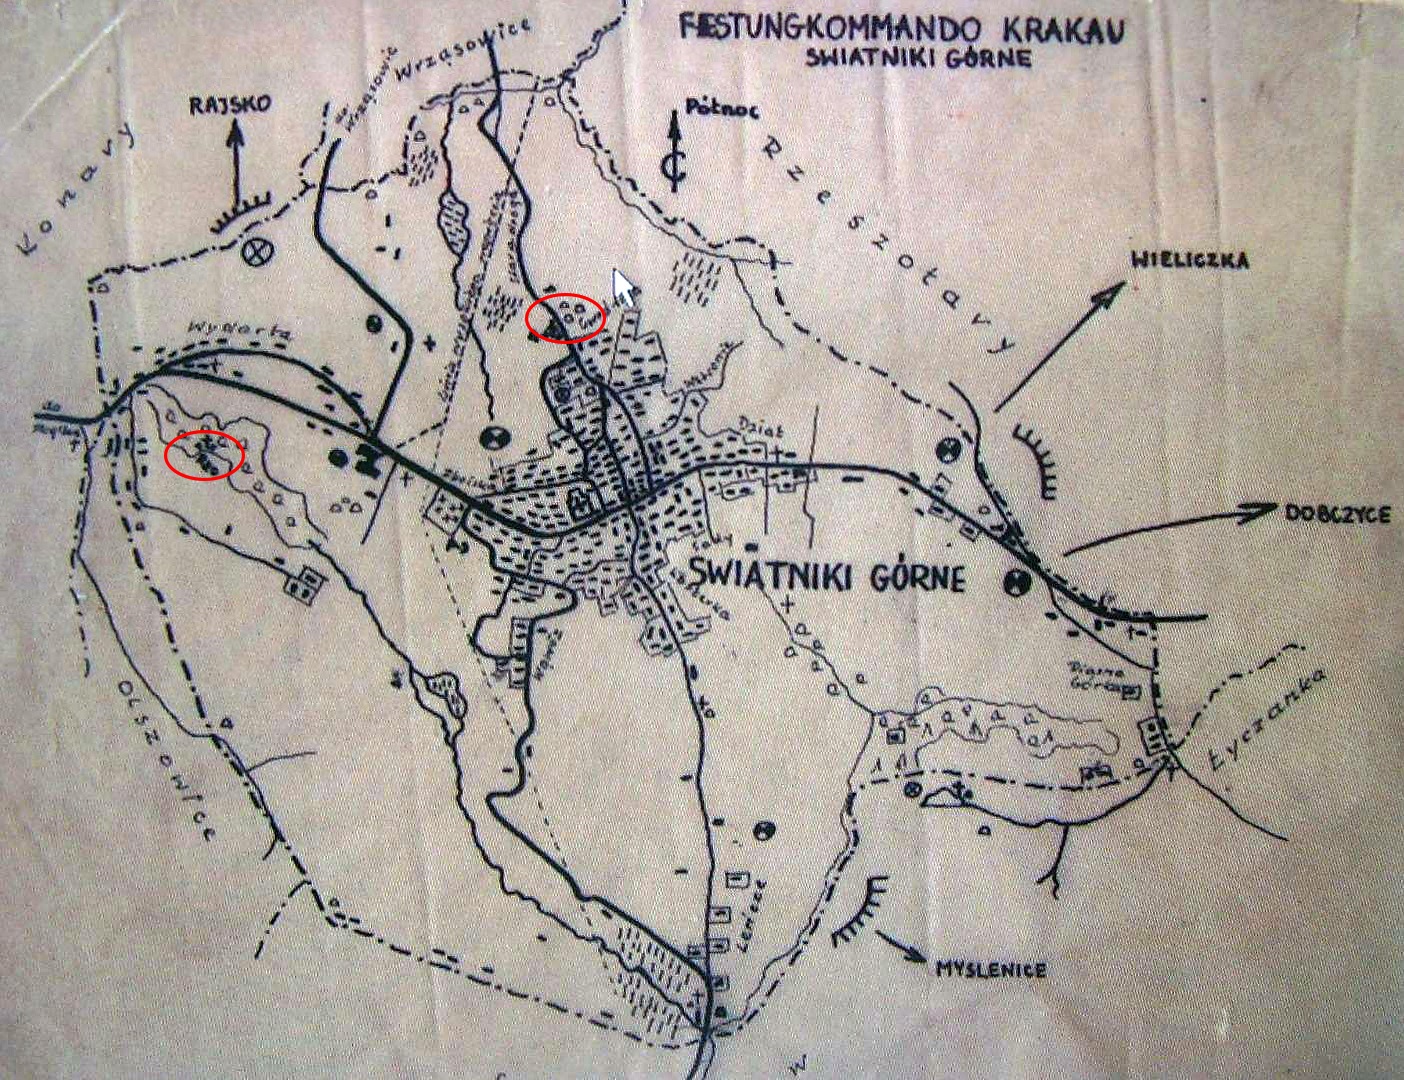 Ryc. 12 Szkic Festungkommando Krakau o zagadkowymi oznaczeniami mogił.